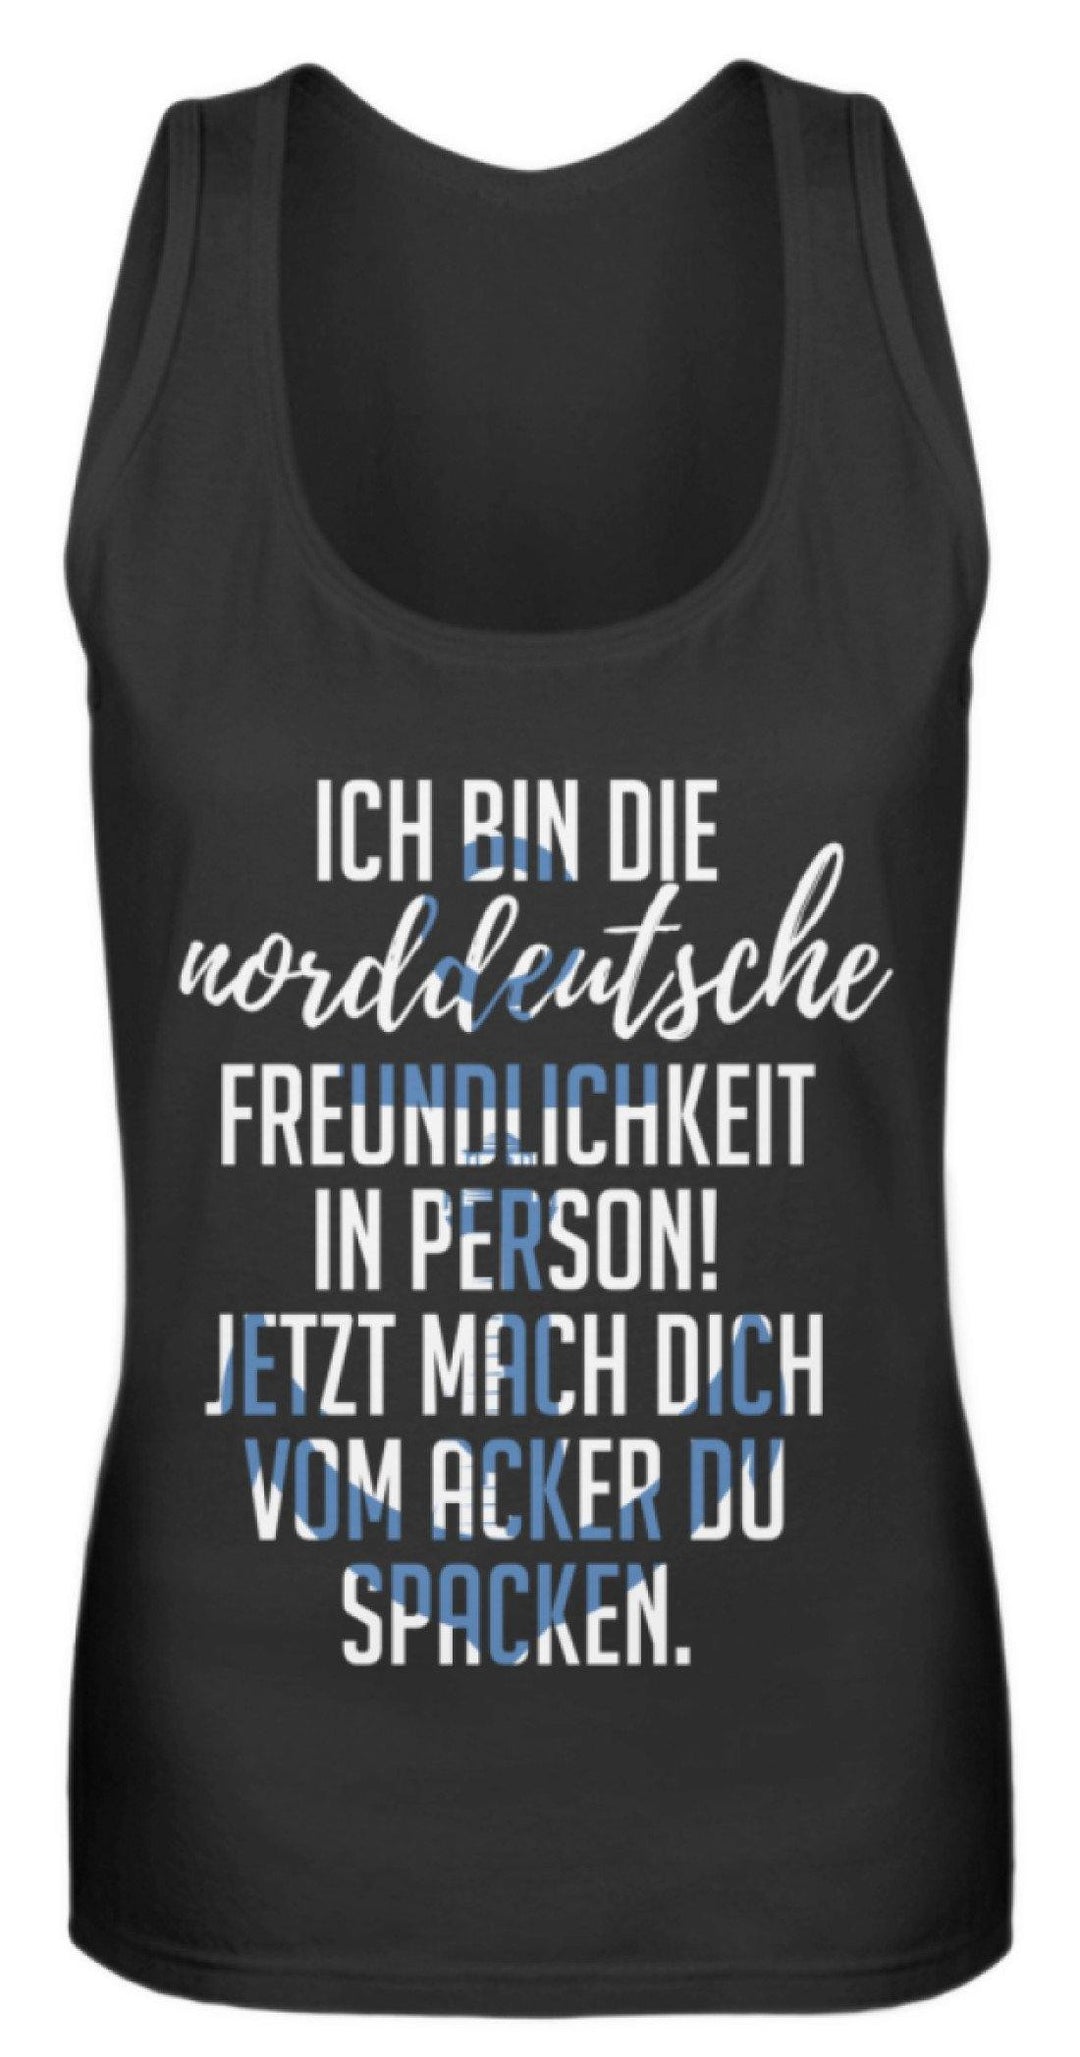 Norddeutsche Freundlichkeit  - Frauen Tanktop - Words on Shirts Sag es mit dem Mittelfinger Shirts Hoodies Sweatshirt Taschen Gymsack Spruch Sprüche Statement